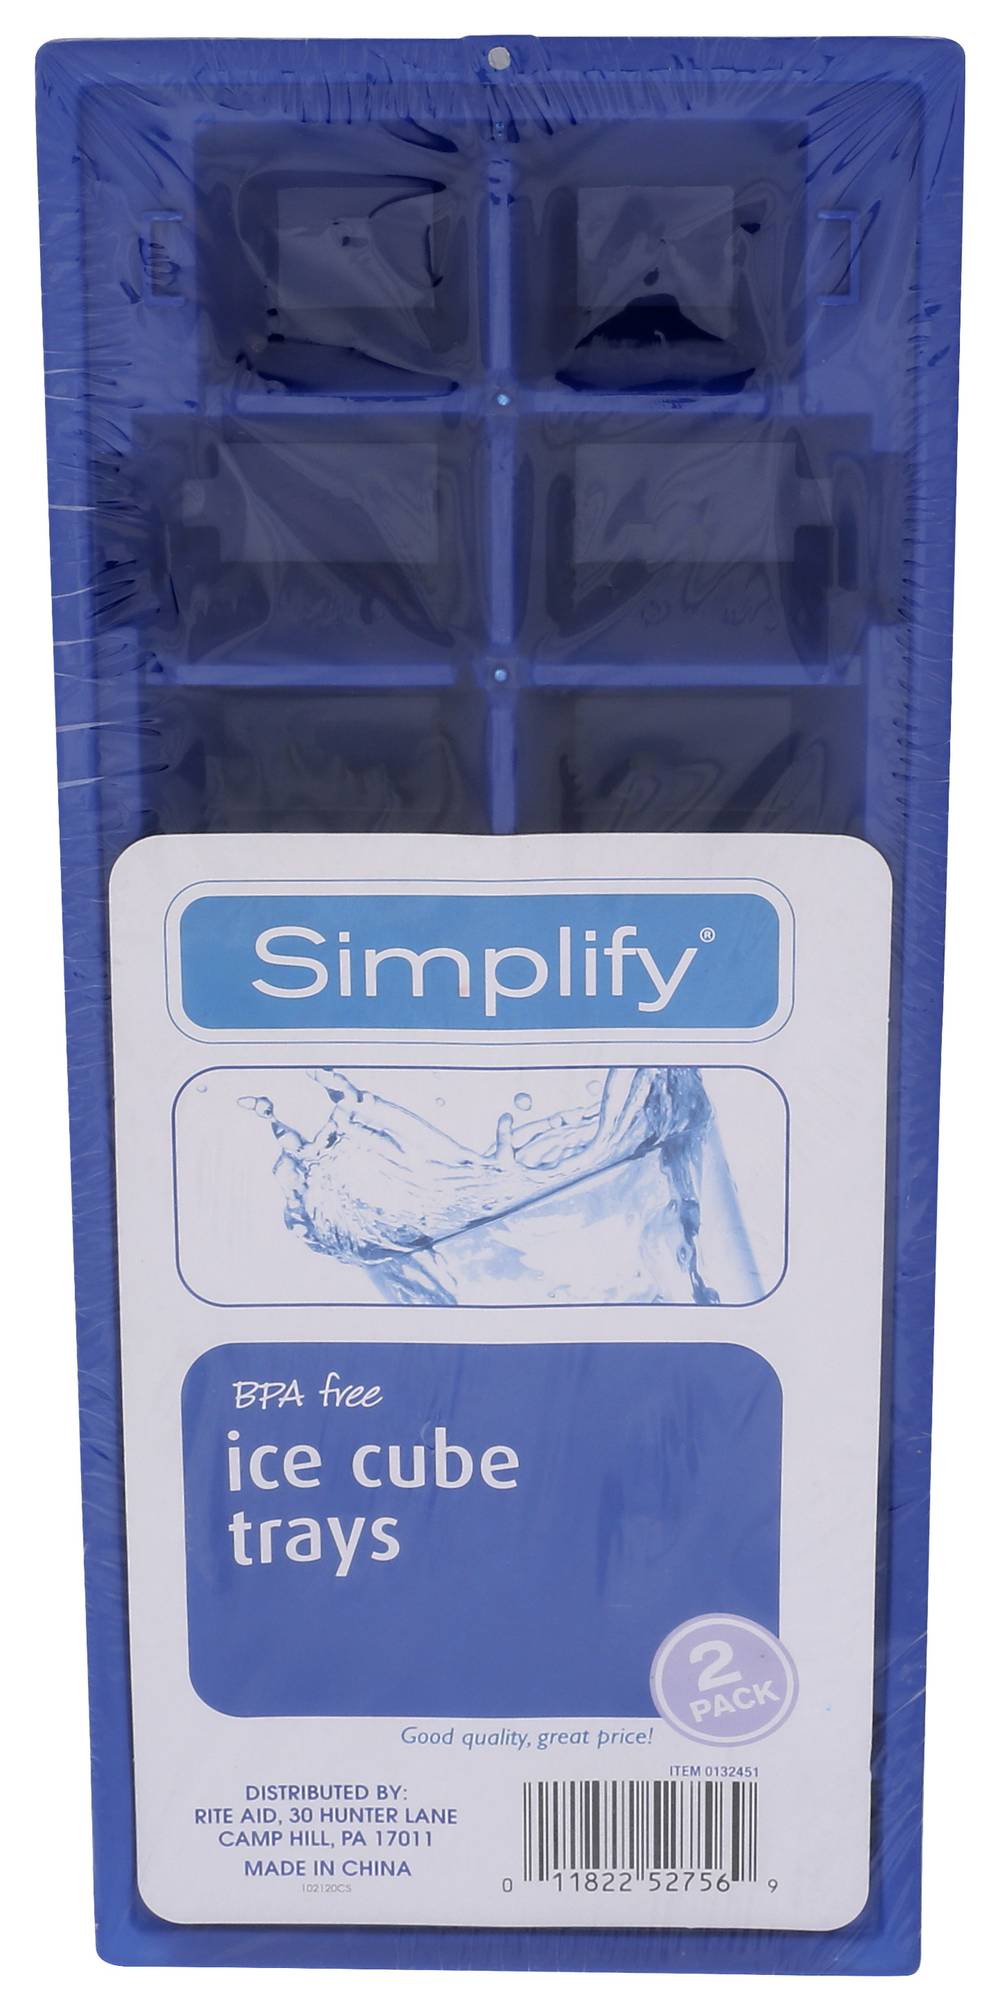 Simplify Ice Cube Tray - 2 pk